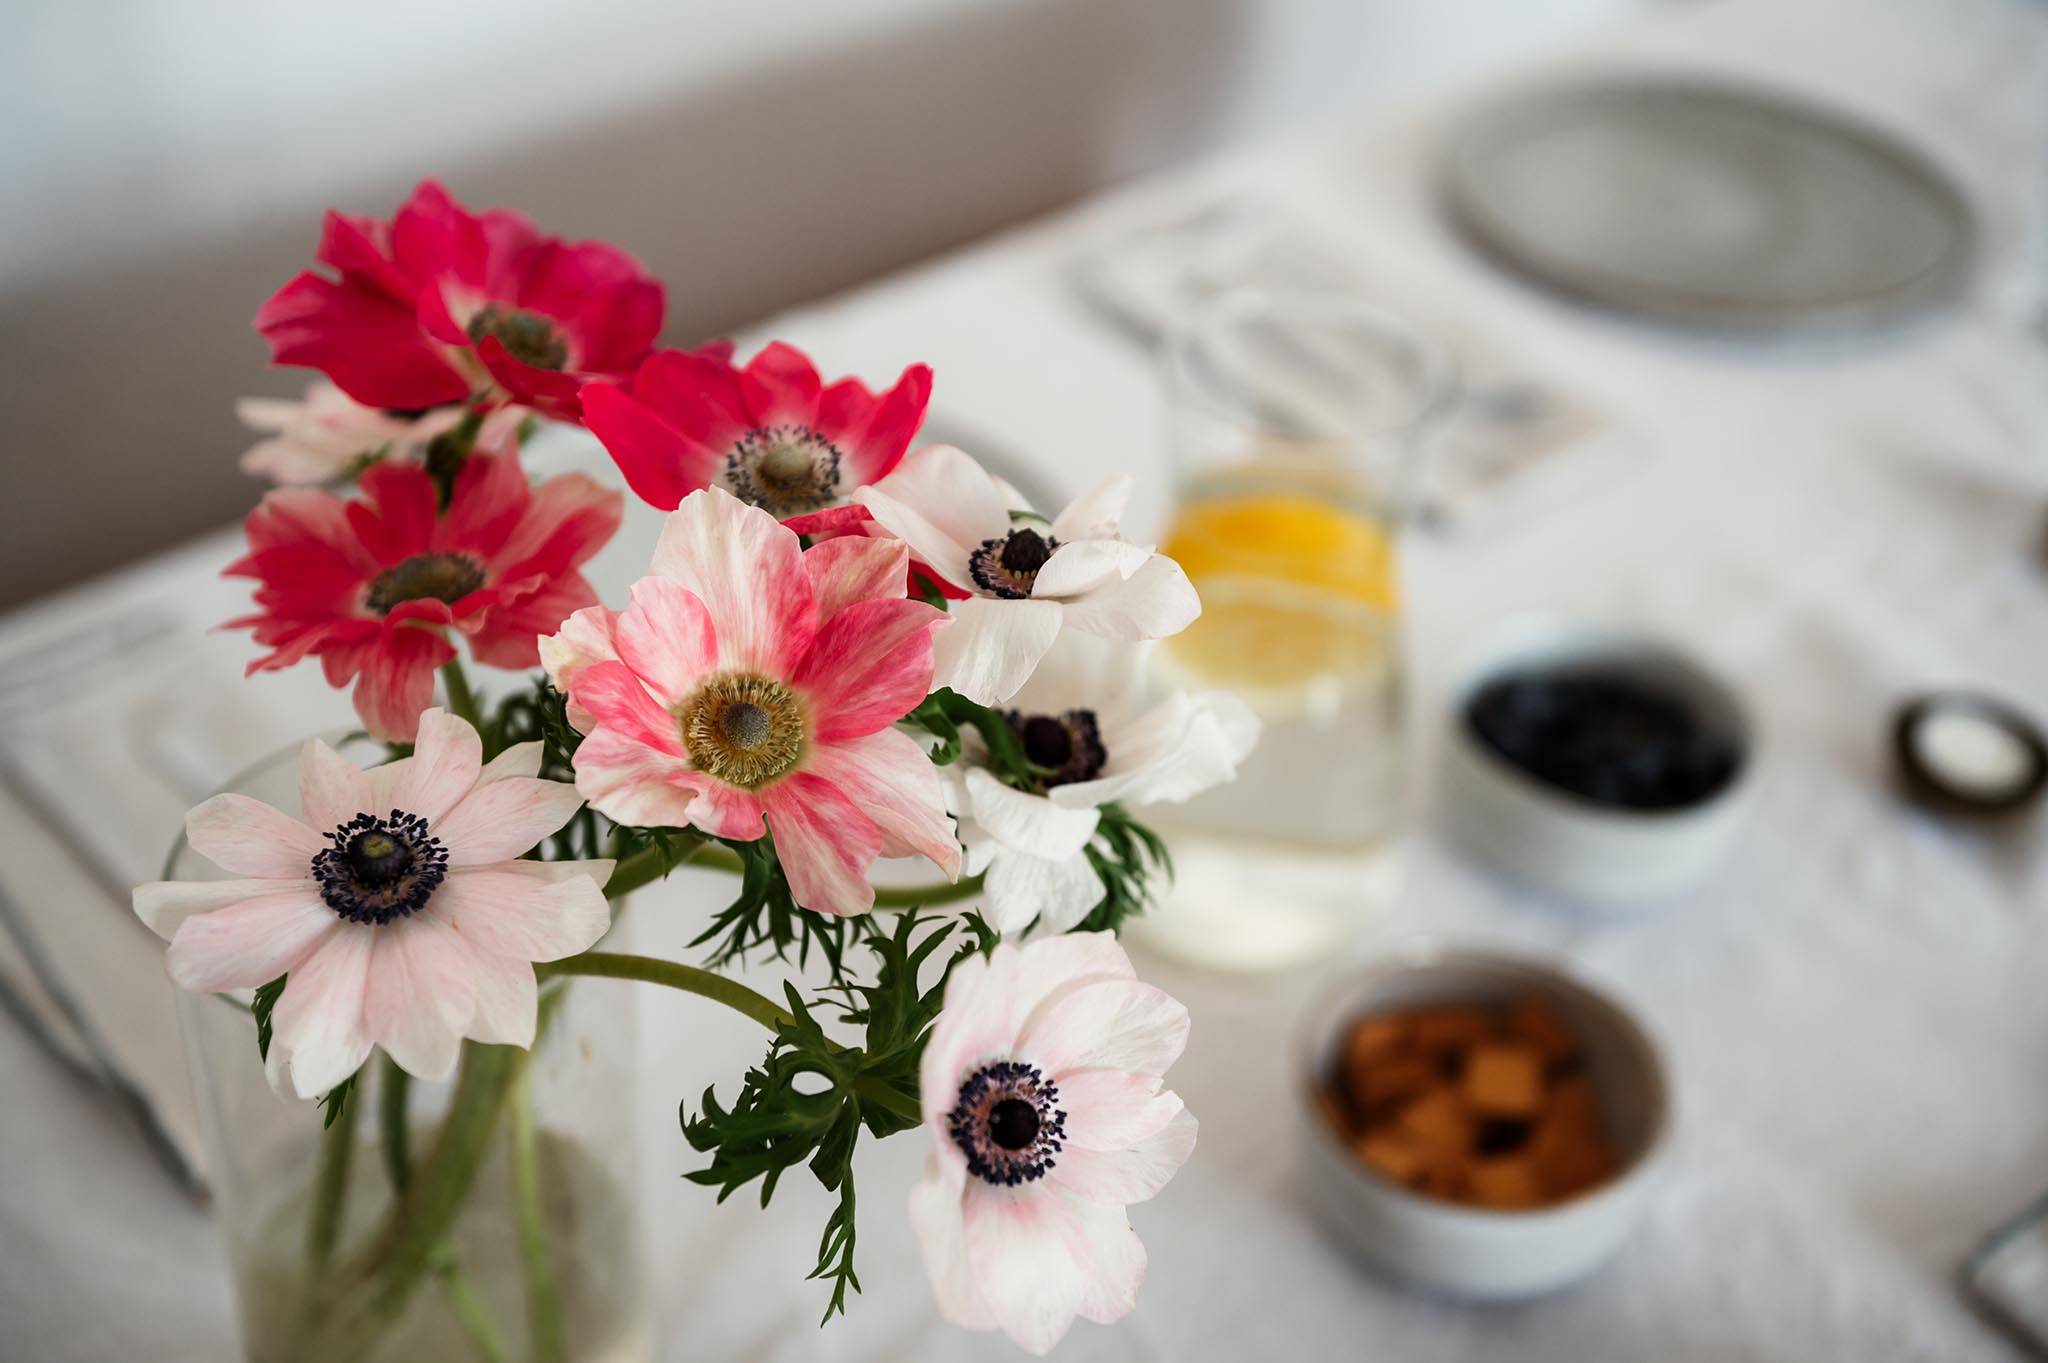 Ein gedeckter Tisch mit einem bunten Blumenstrauß